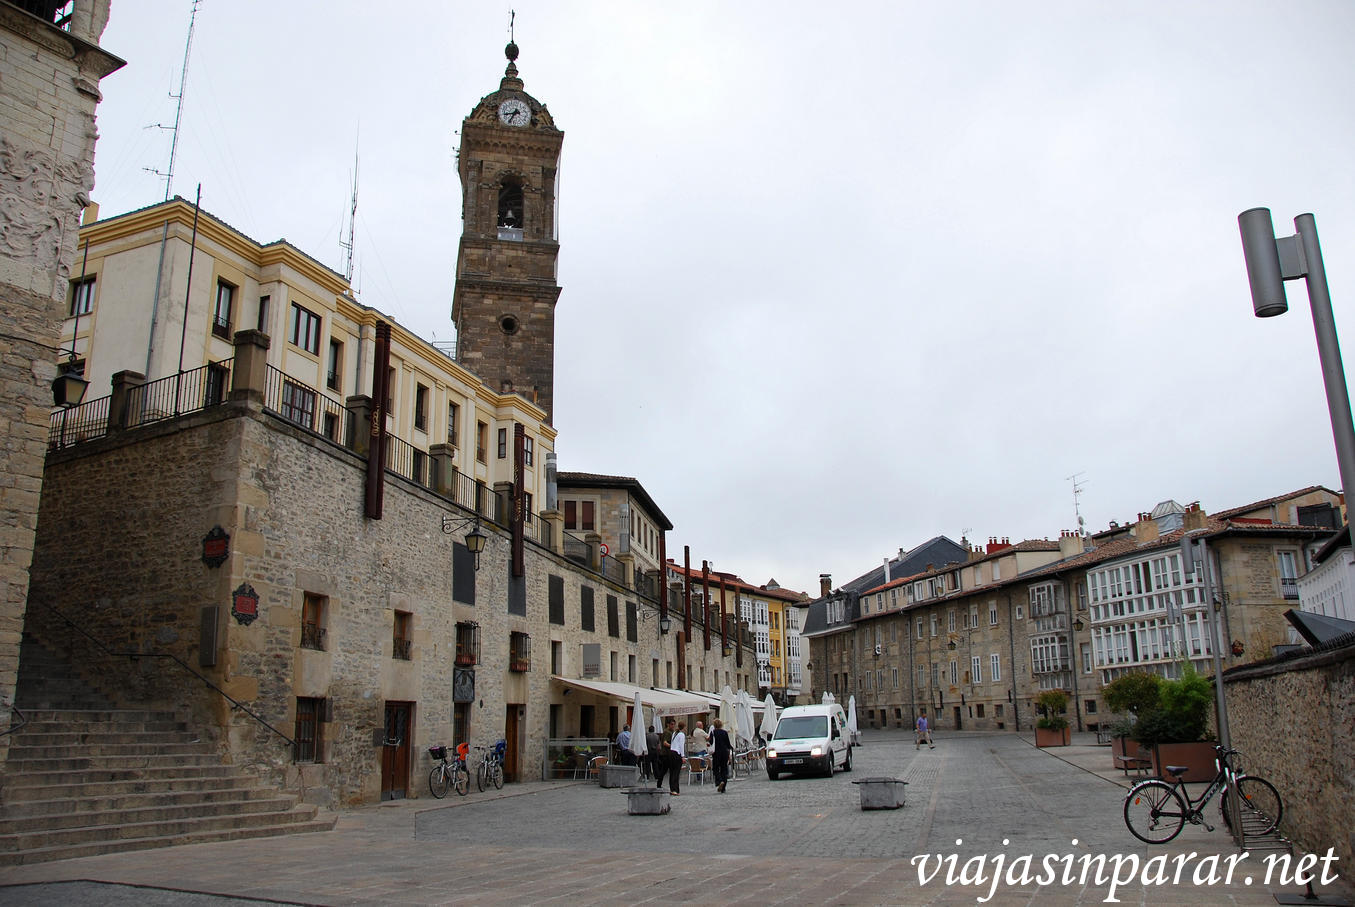 Viaja Sin Qué en Vitoria-Gasteiz